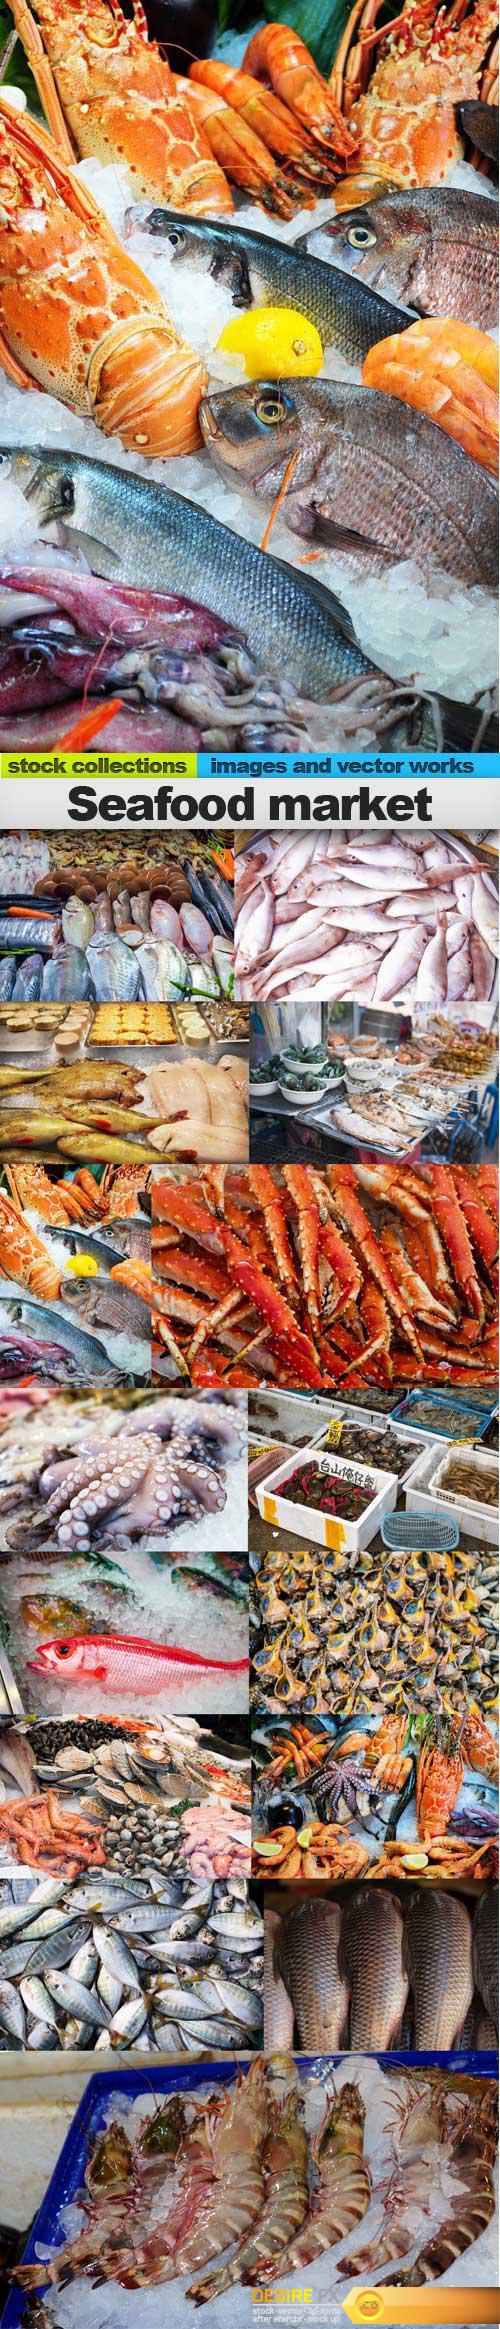 Seafood market, 15 x UHQ JPEG